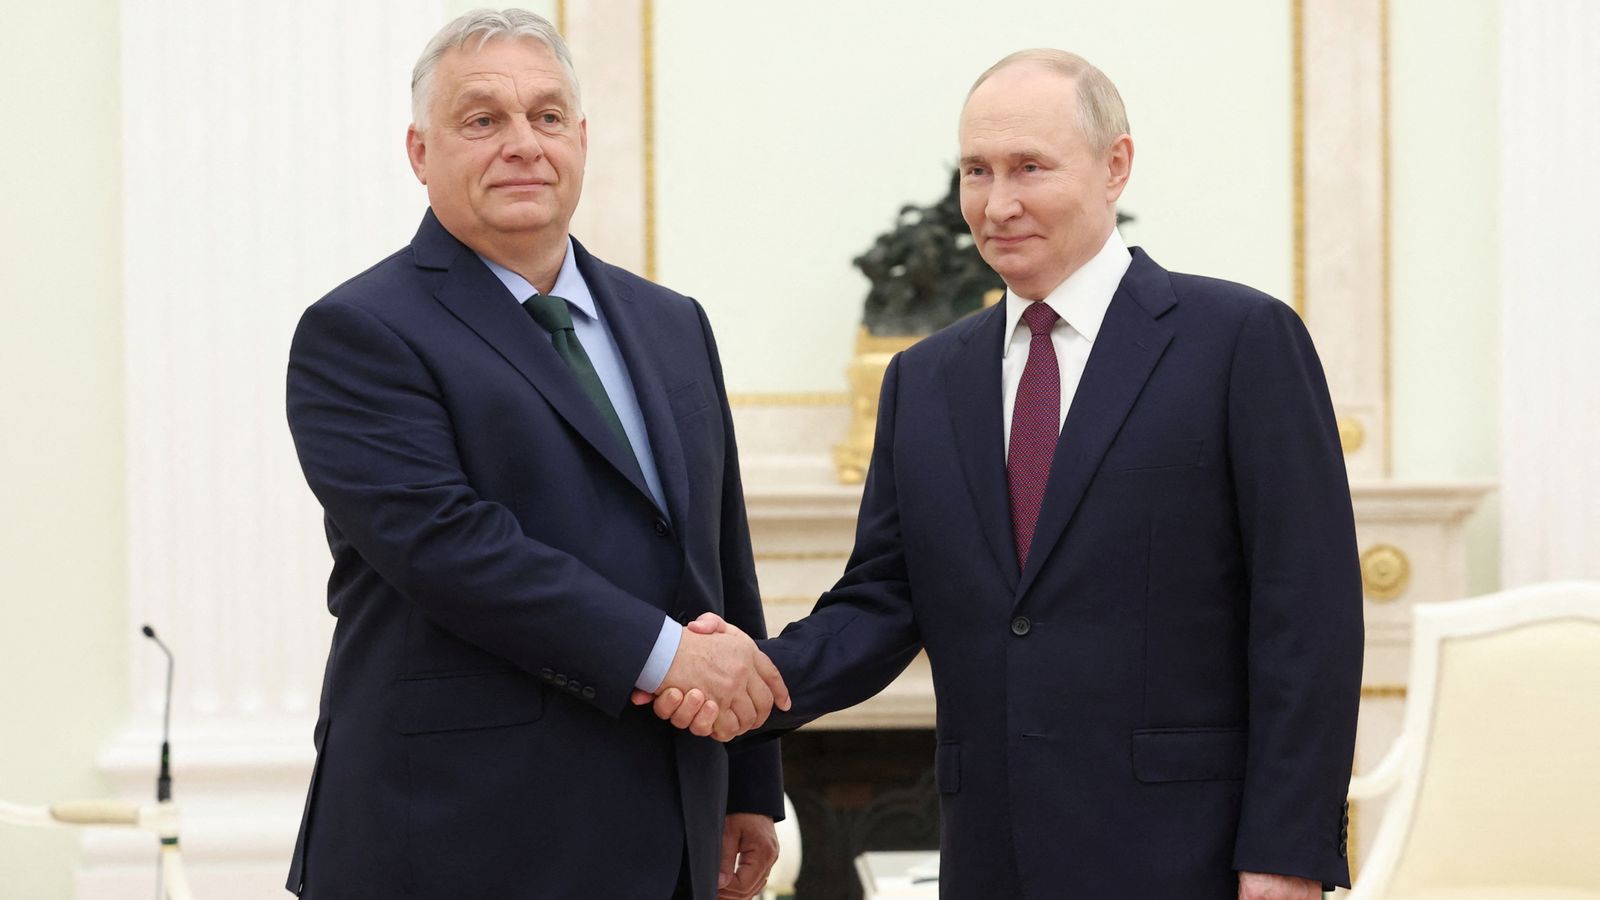 「血に染まった独裁者と握手するな」：ハンガリー首相とウラジーミル・プーチン会談への怒り | 世界のニュース